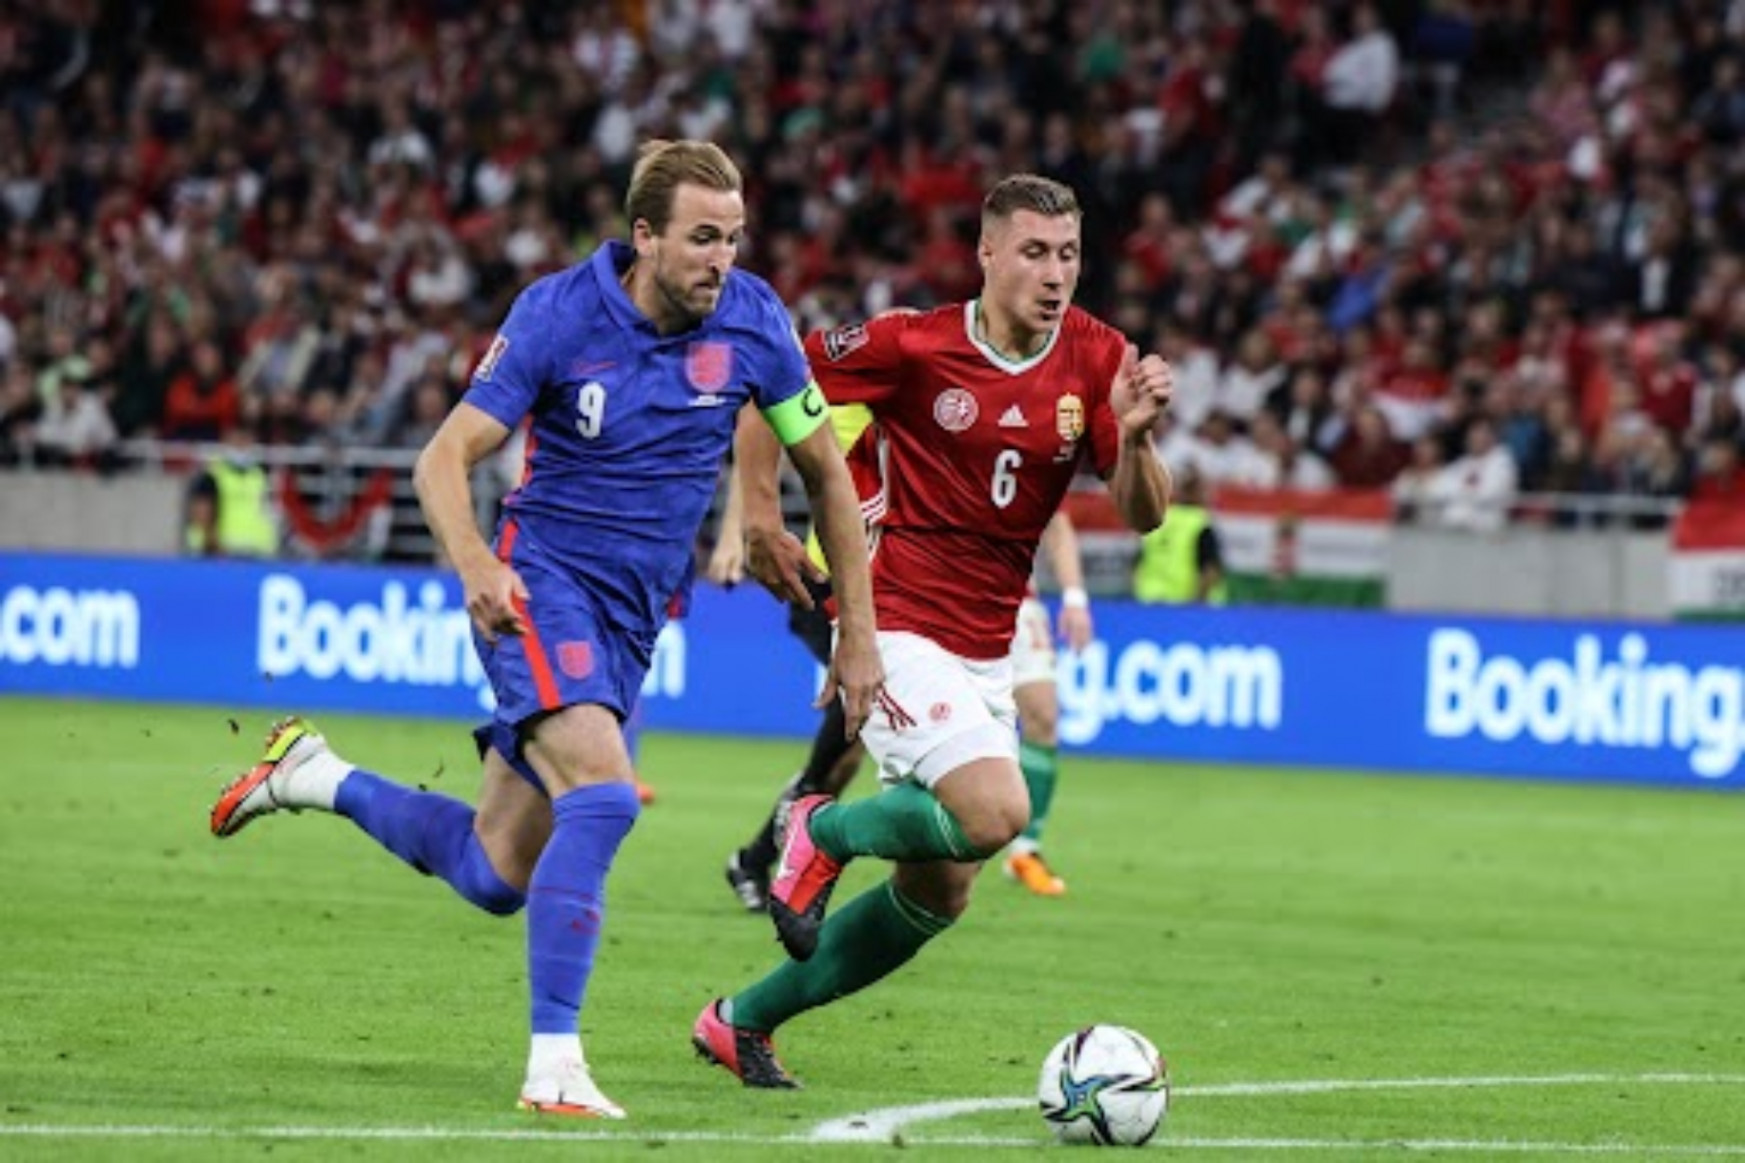 Anglia nem hagyott esélyt, 4-0-ra nyert Budapesten